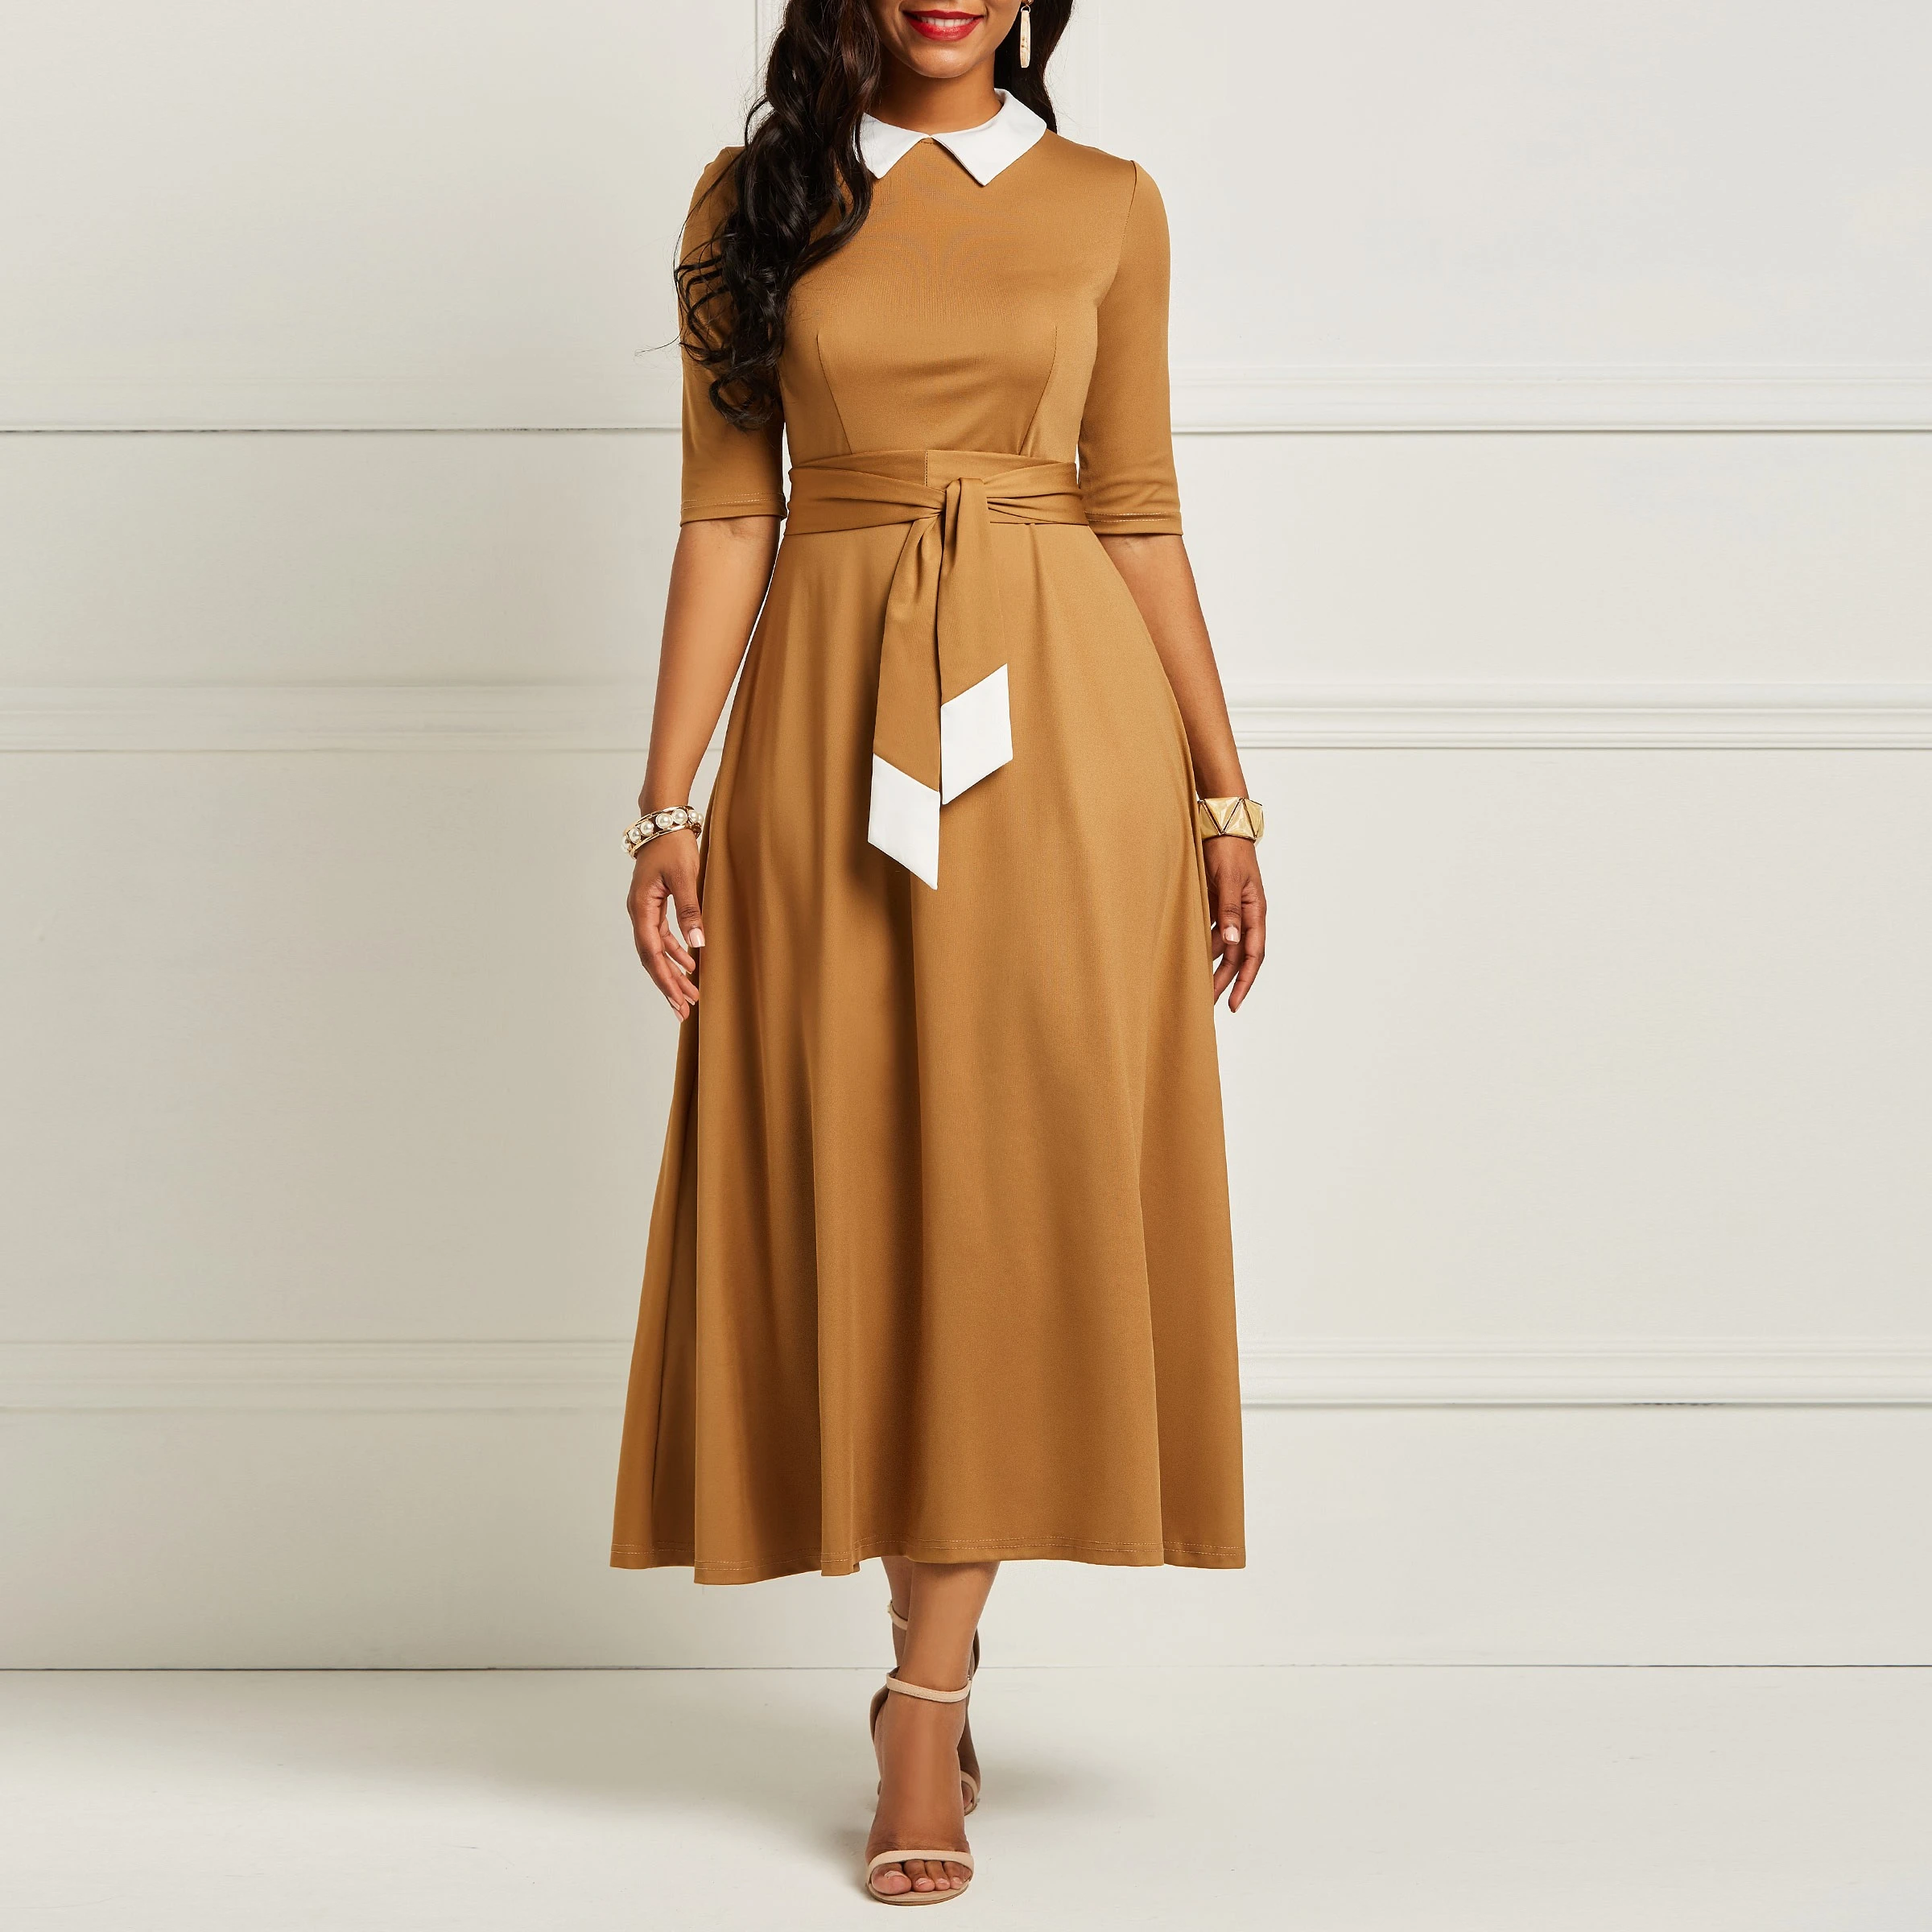 Vestido Vintage mujer otoño 2019 encaje plisado estilo Inglaterra Oficina señoras Simple graduación elegante Swing Midi vestidos| Vestidos| - AliExpress